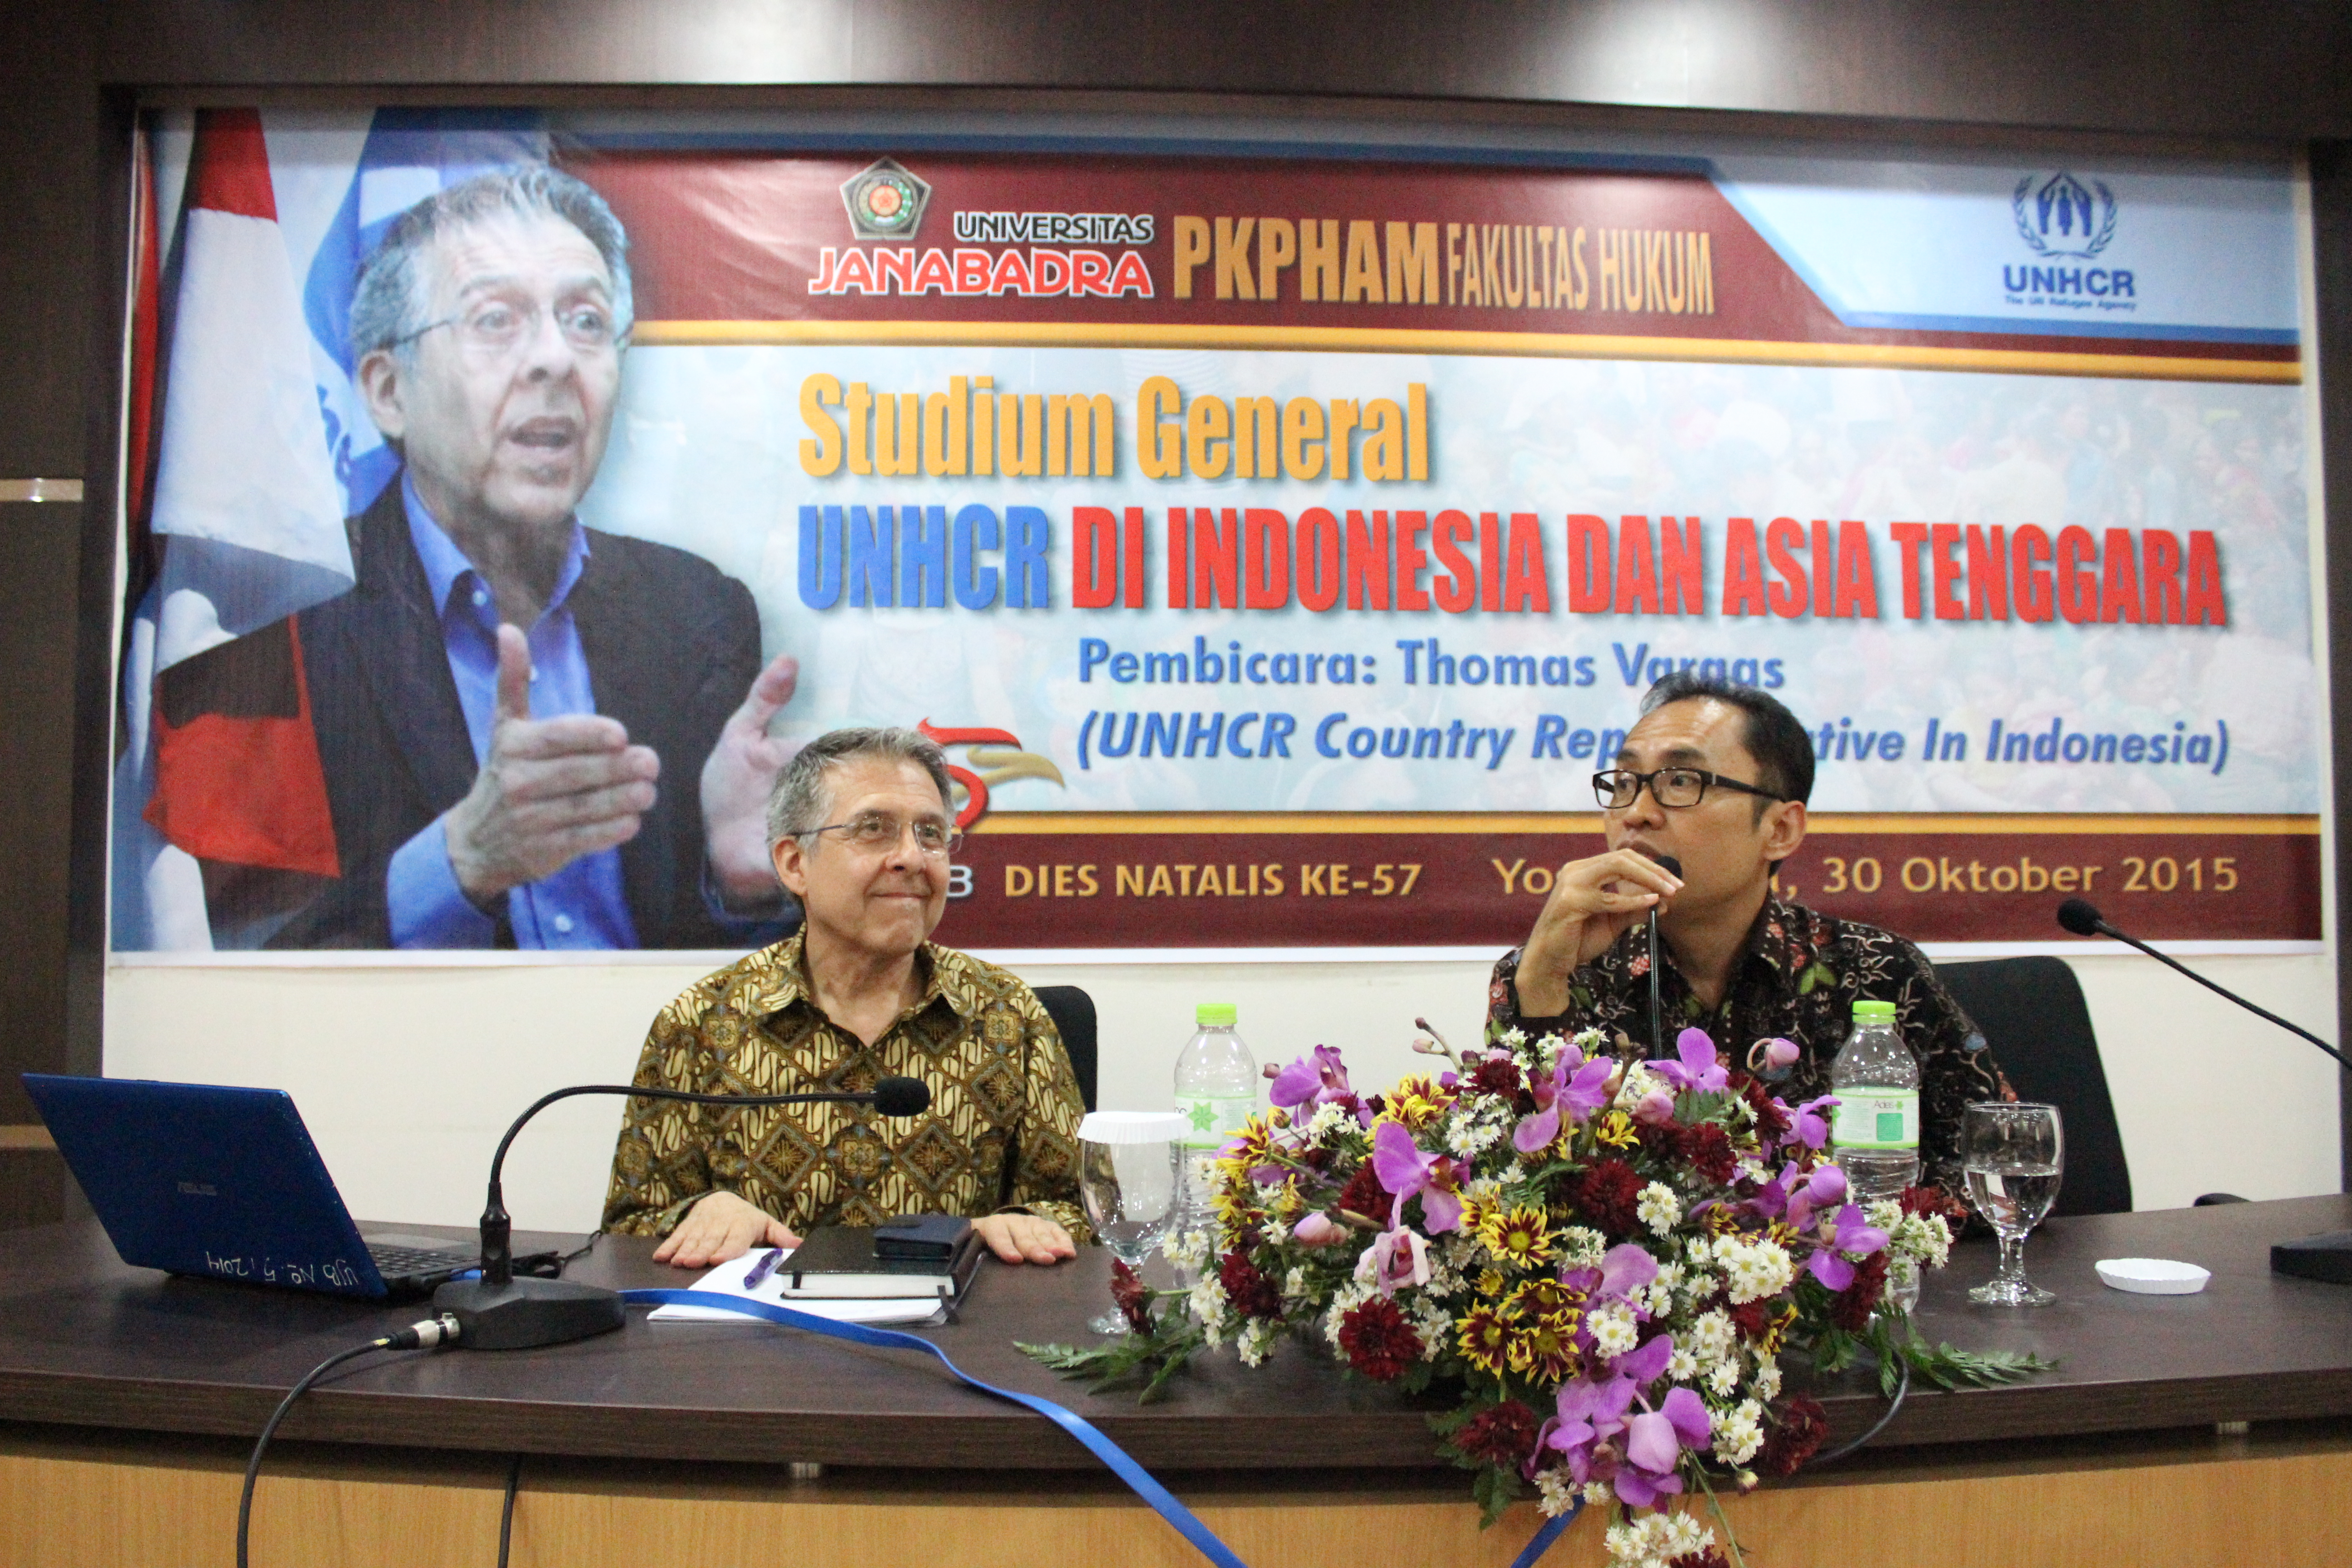 Stadium General UNHCR Di Indonesia Dan Asia Tenggara